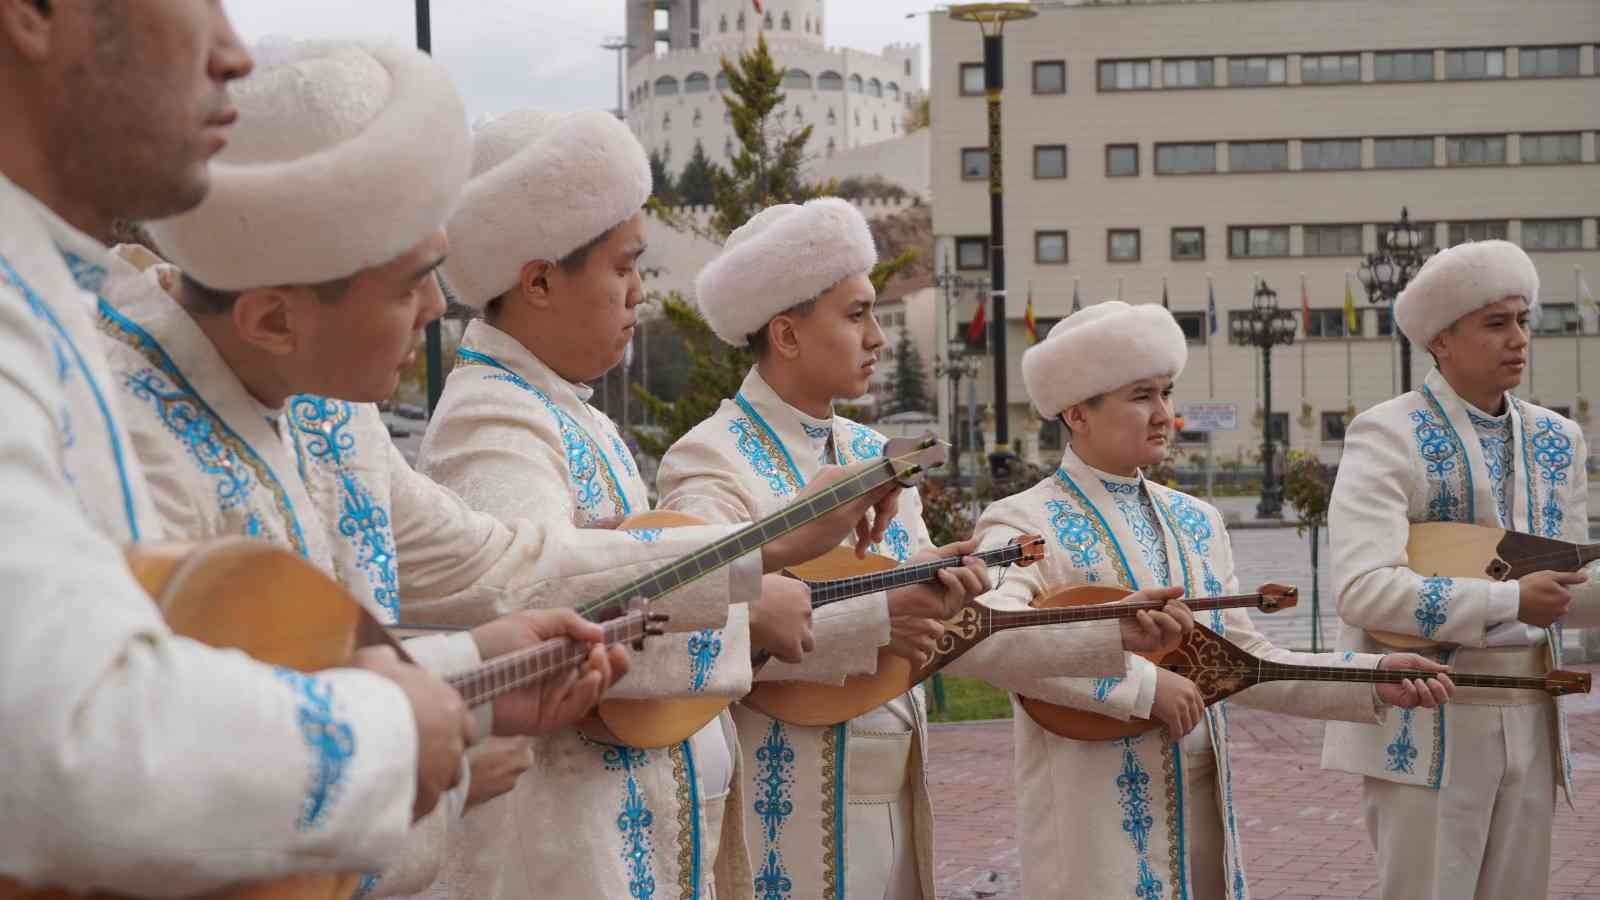 Kazakistanlı Sanatçılar Keçiören’de “Flash Mob” yaptı #ankara